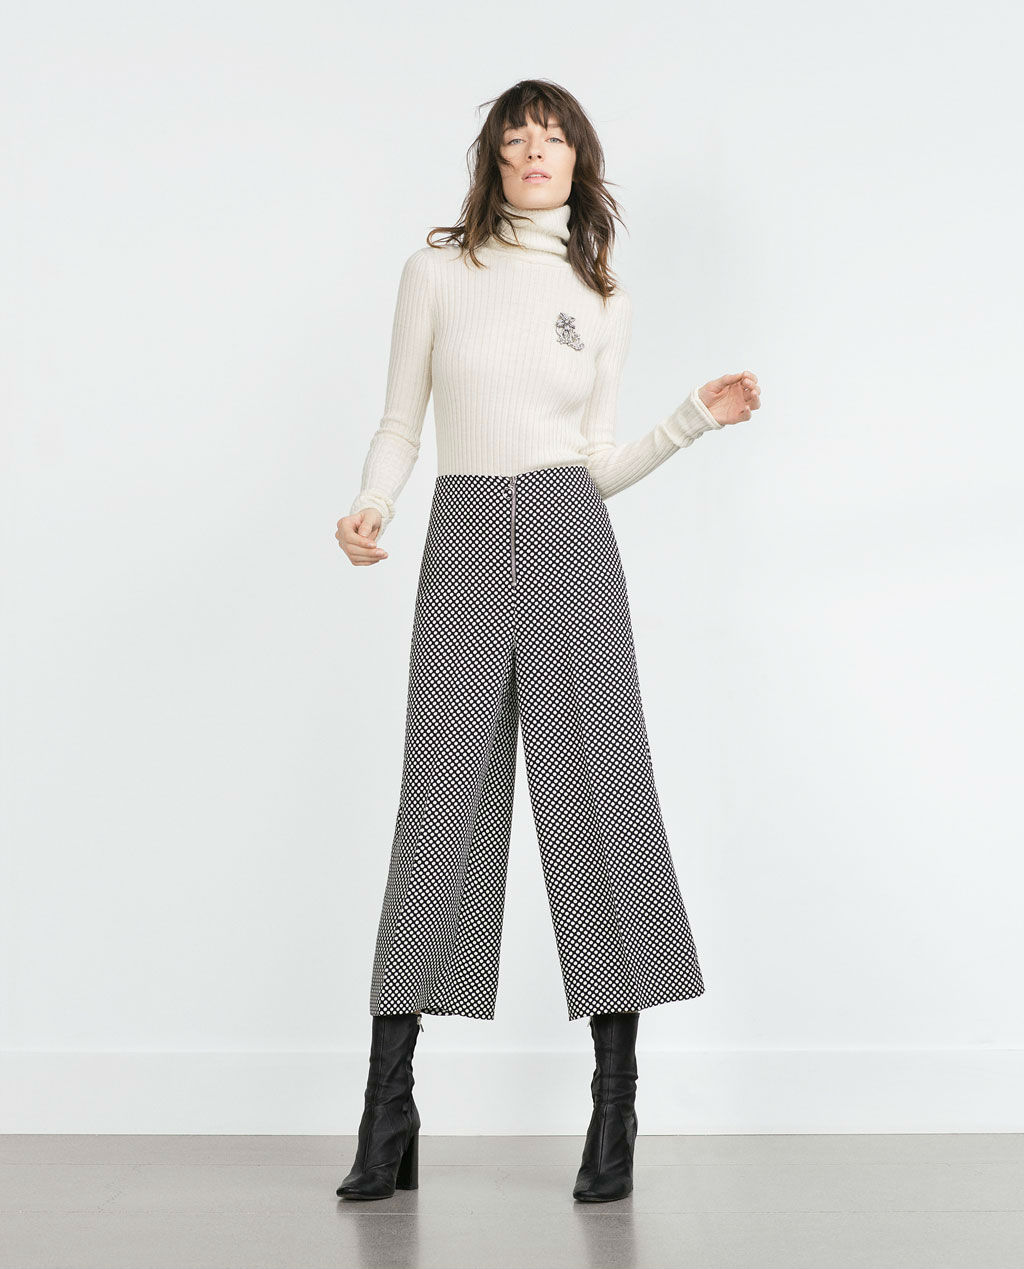 La colección invierno 2015 Zara llega cargada de pantalones culotte - Modalia.es